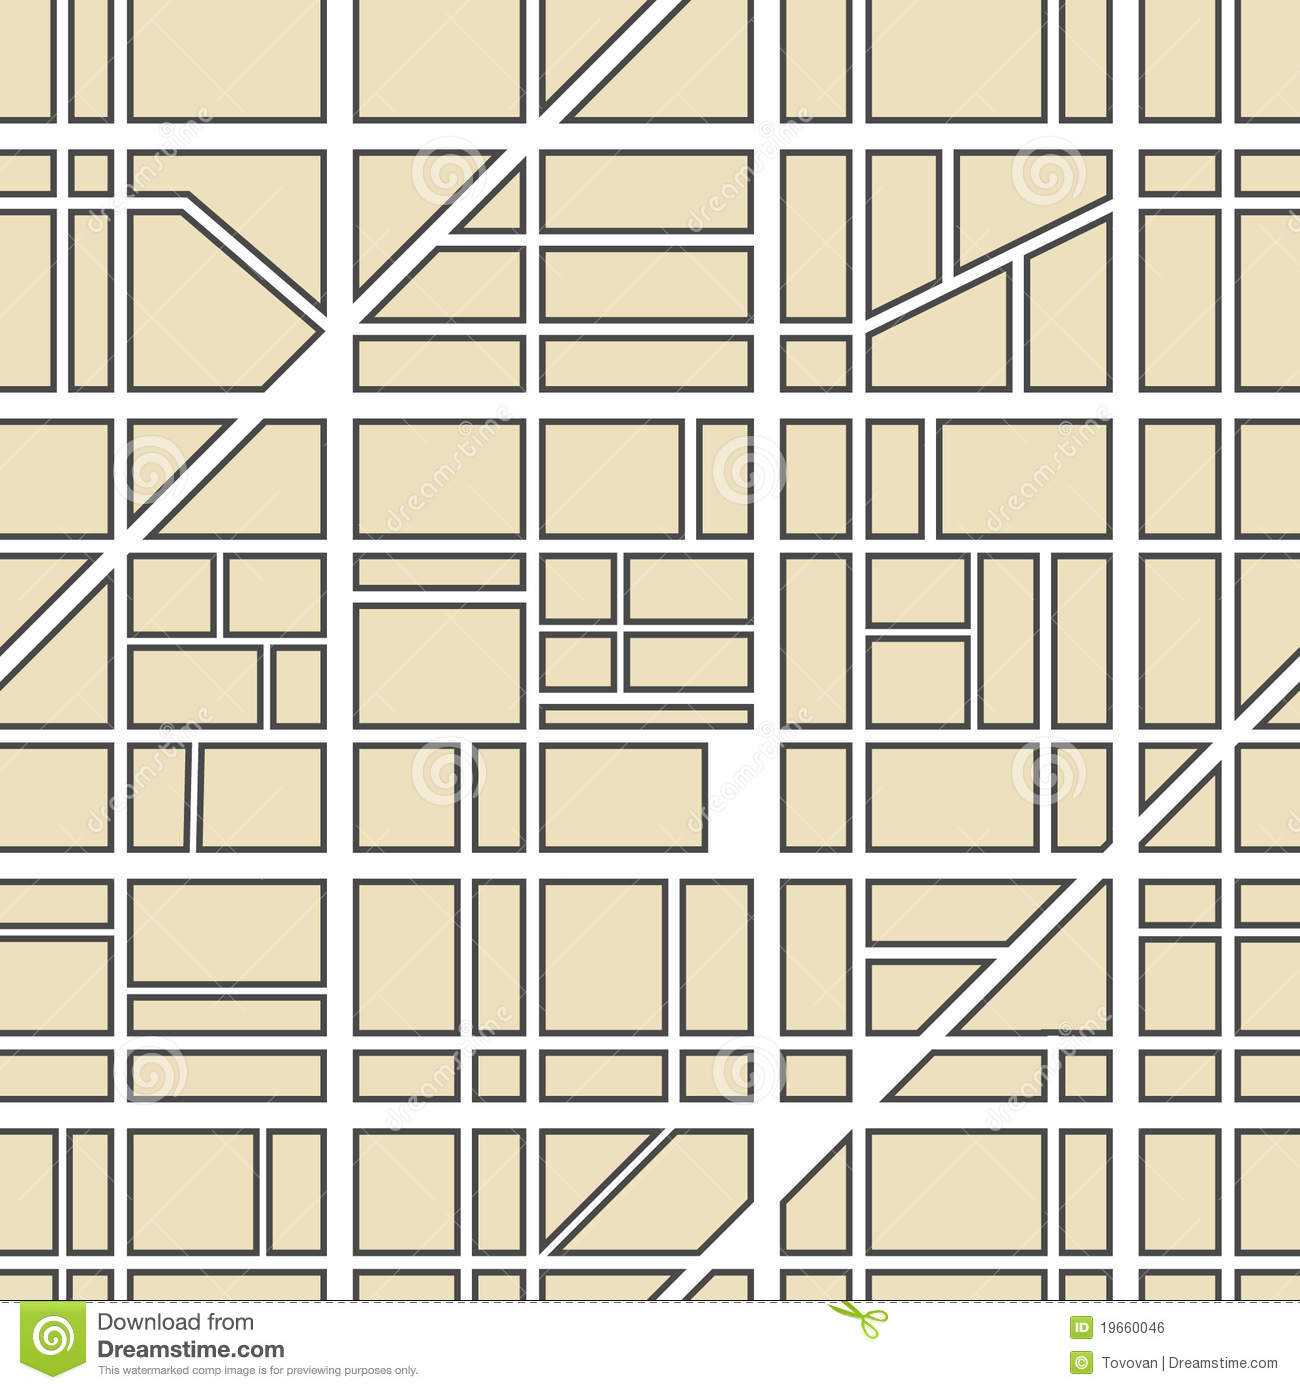 Абстракция Карты Города Иллюстрация Вектора. Иллюстрации Intended For Blank City Map Template